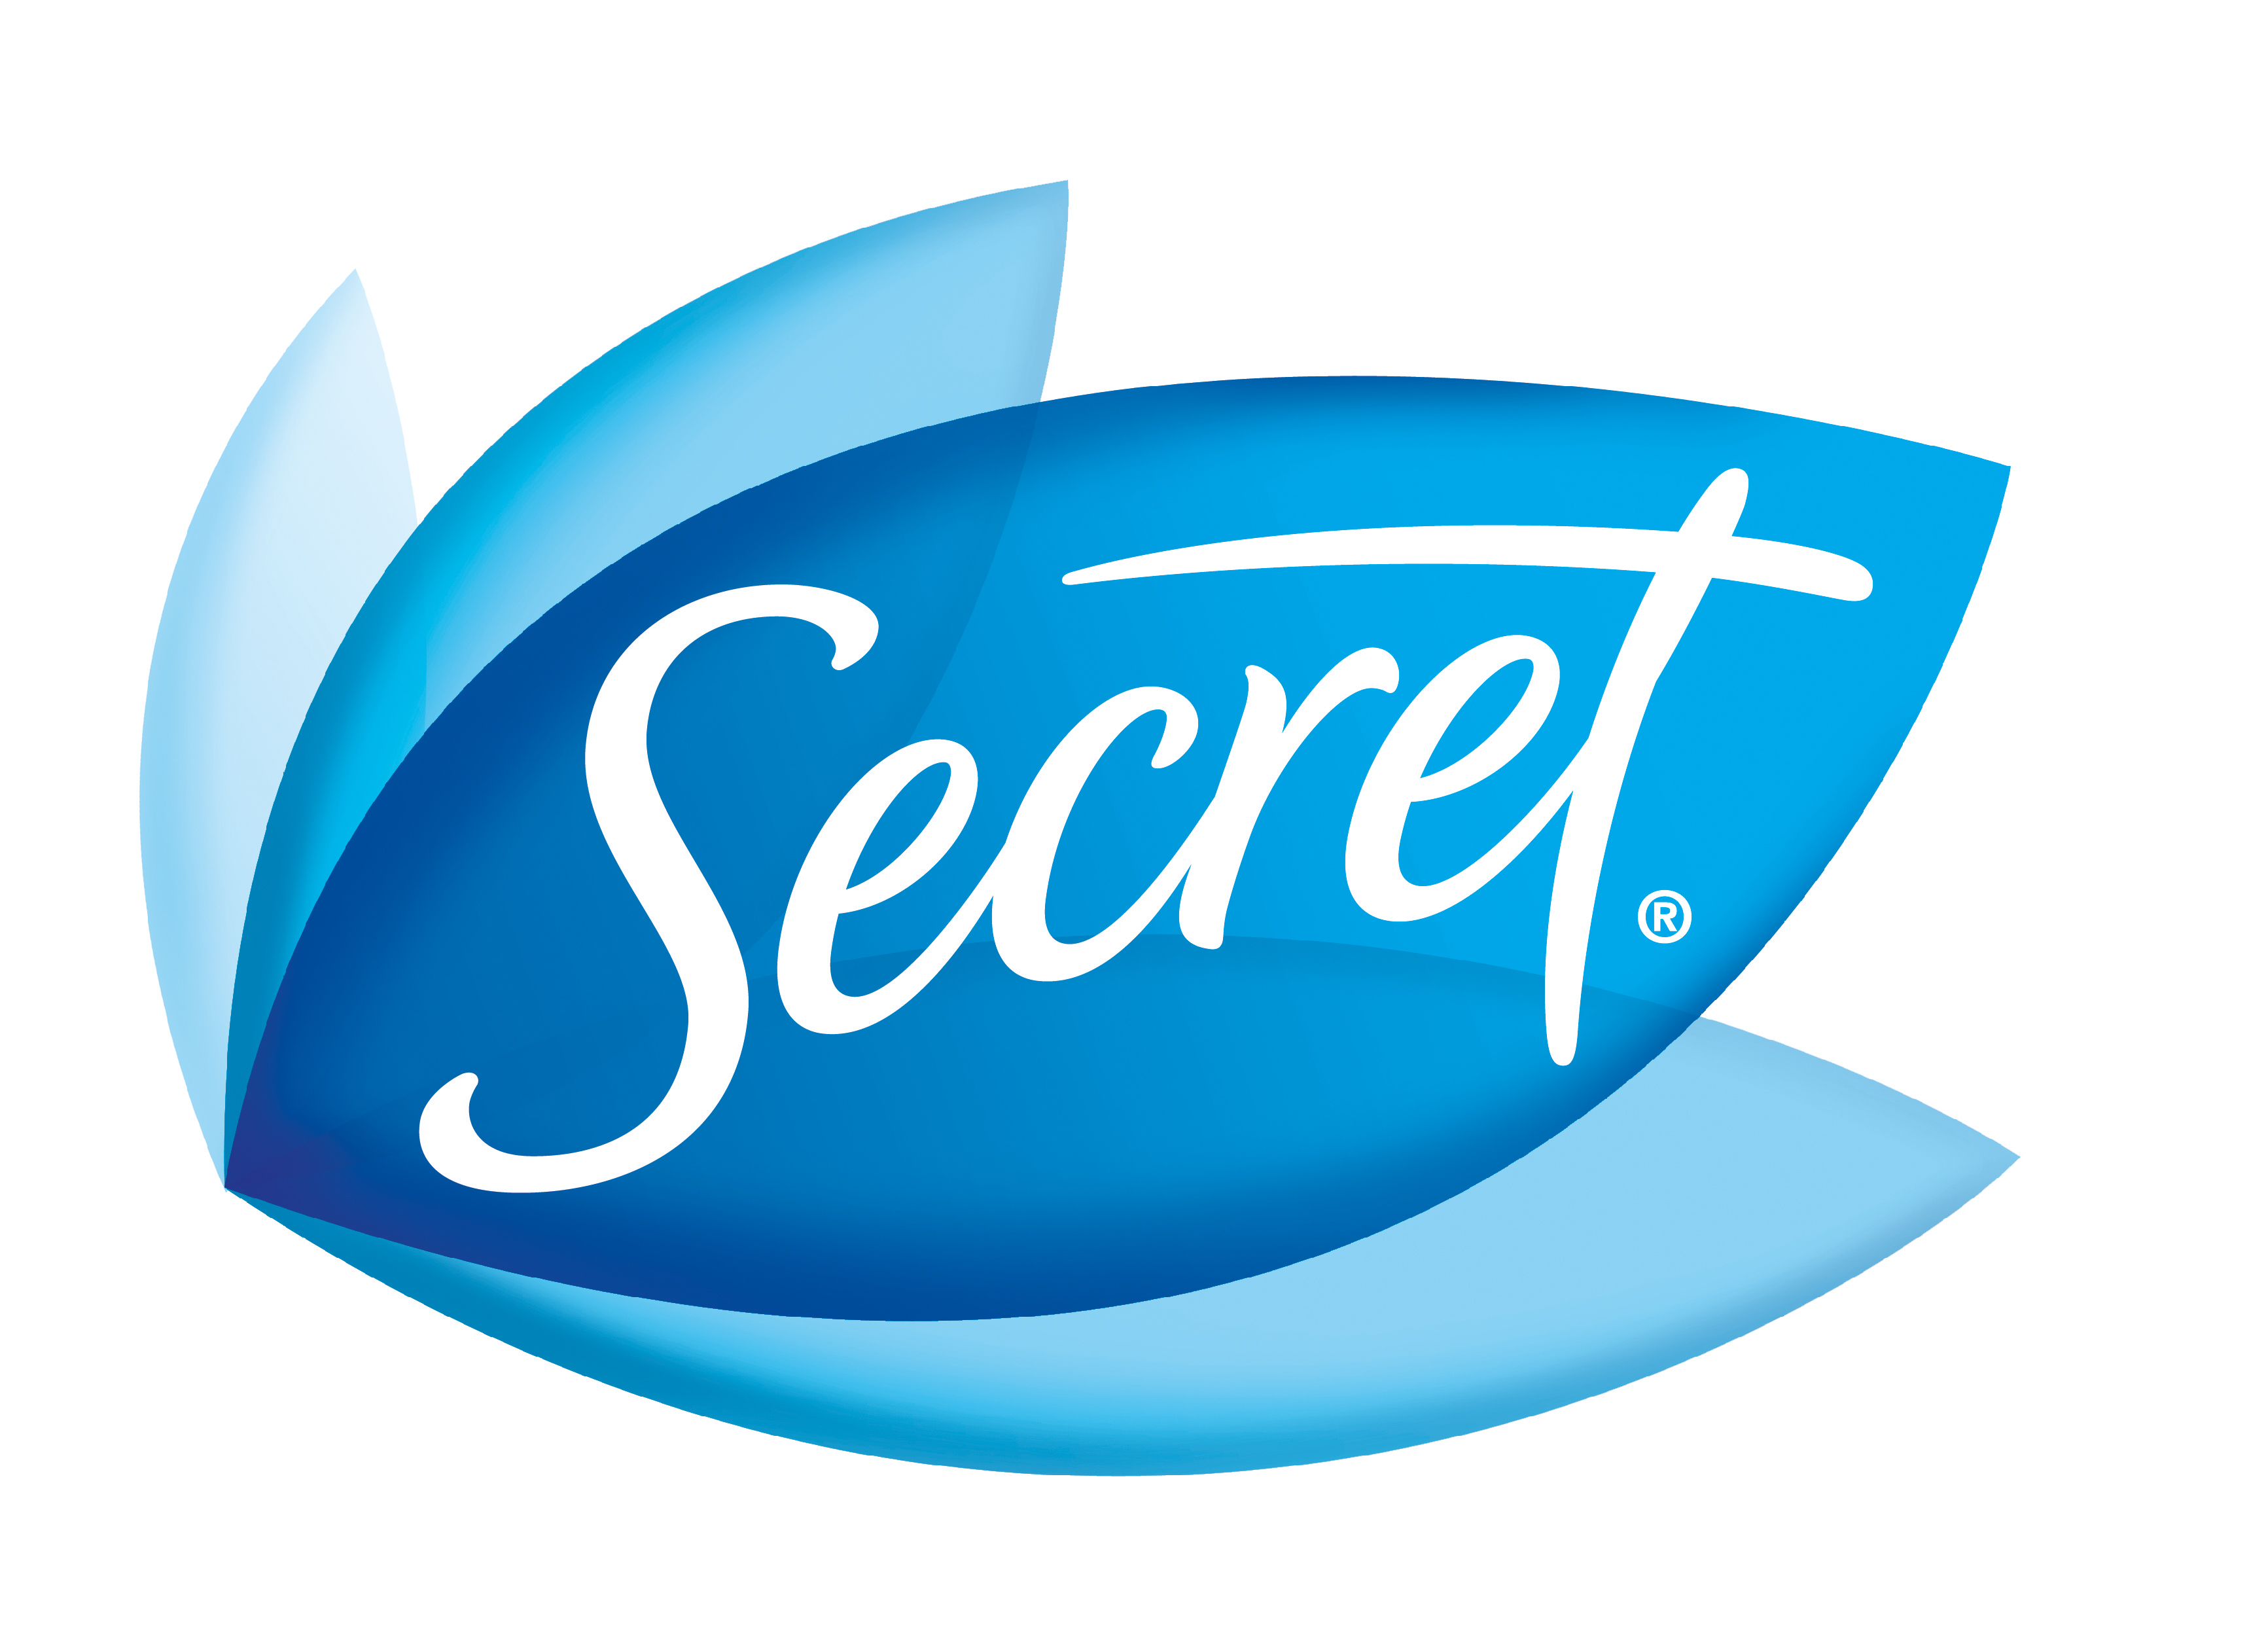 Secret. 